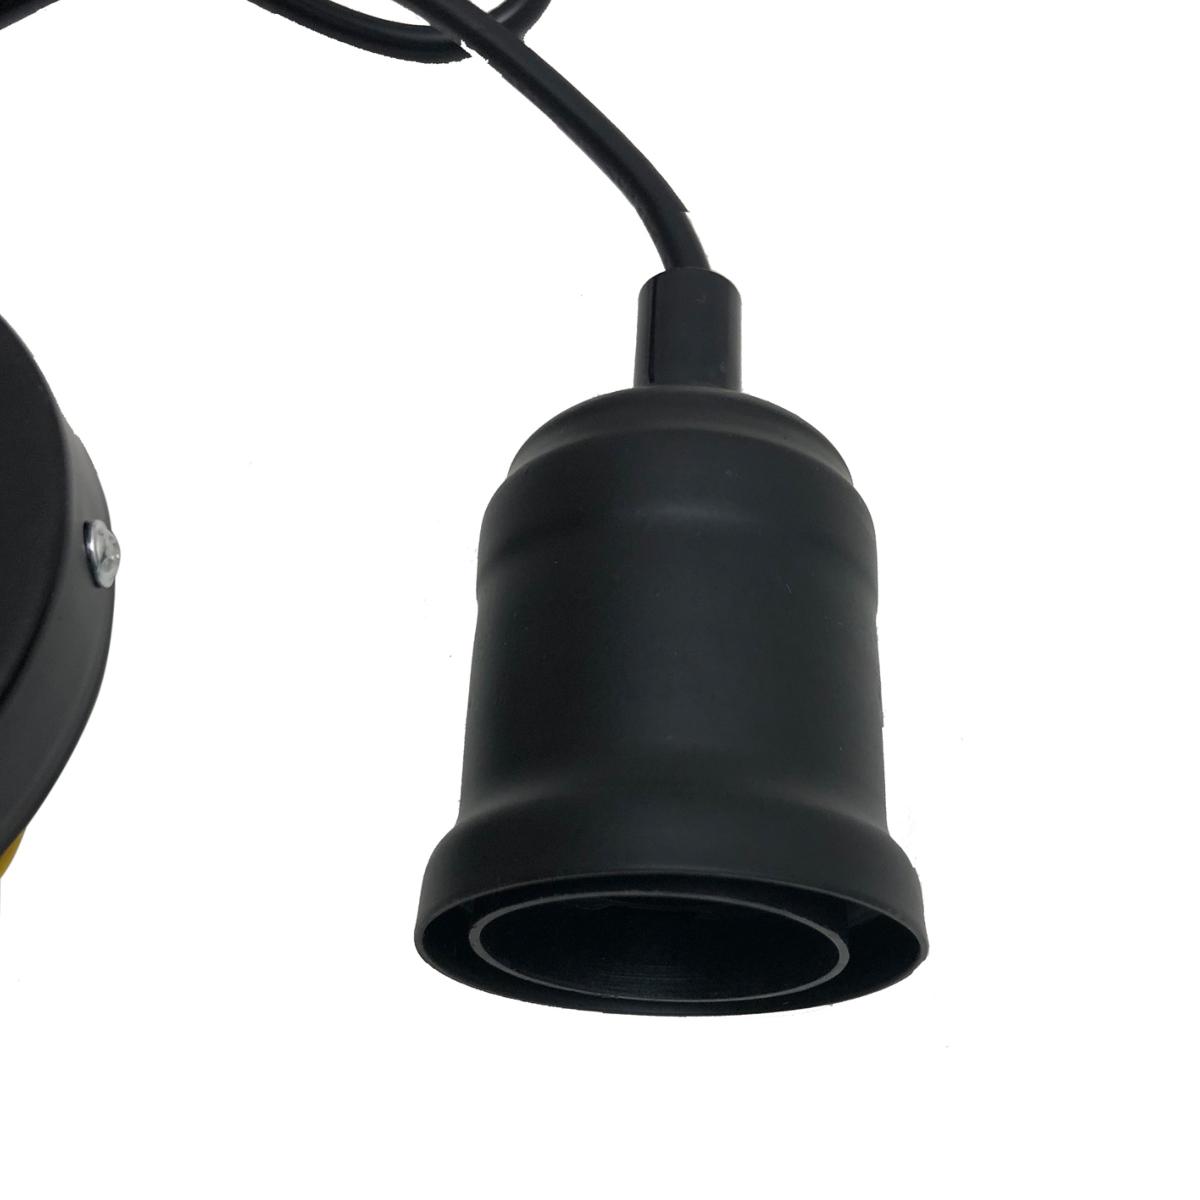 Suspension luminaire Ampoule E27 Noir Mat